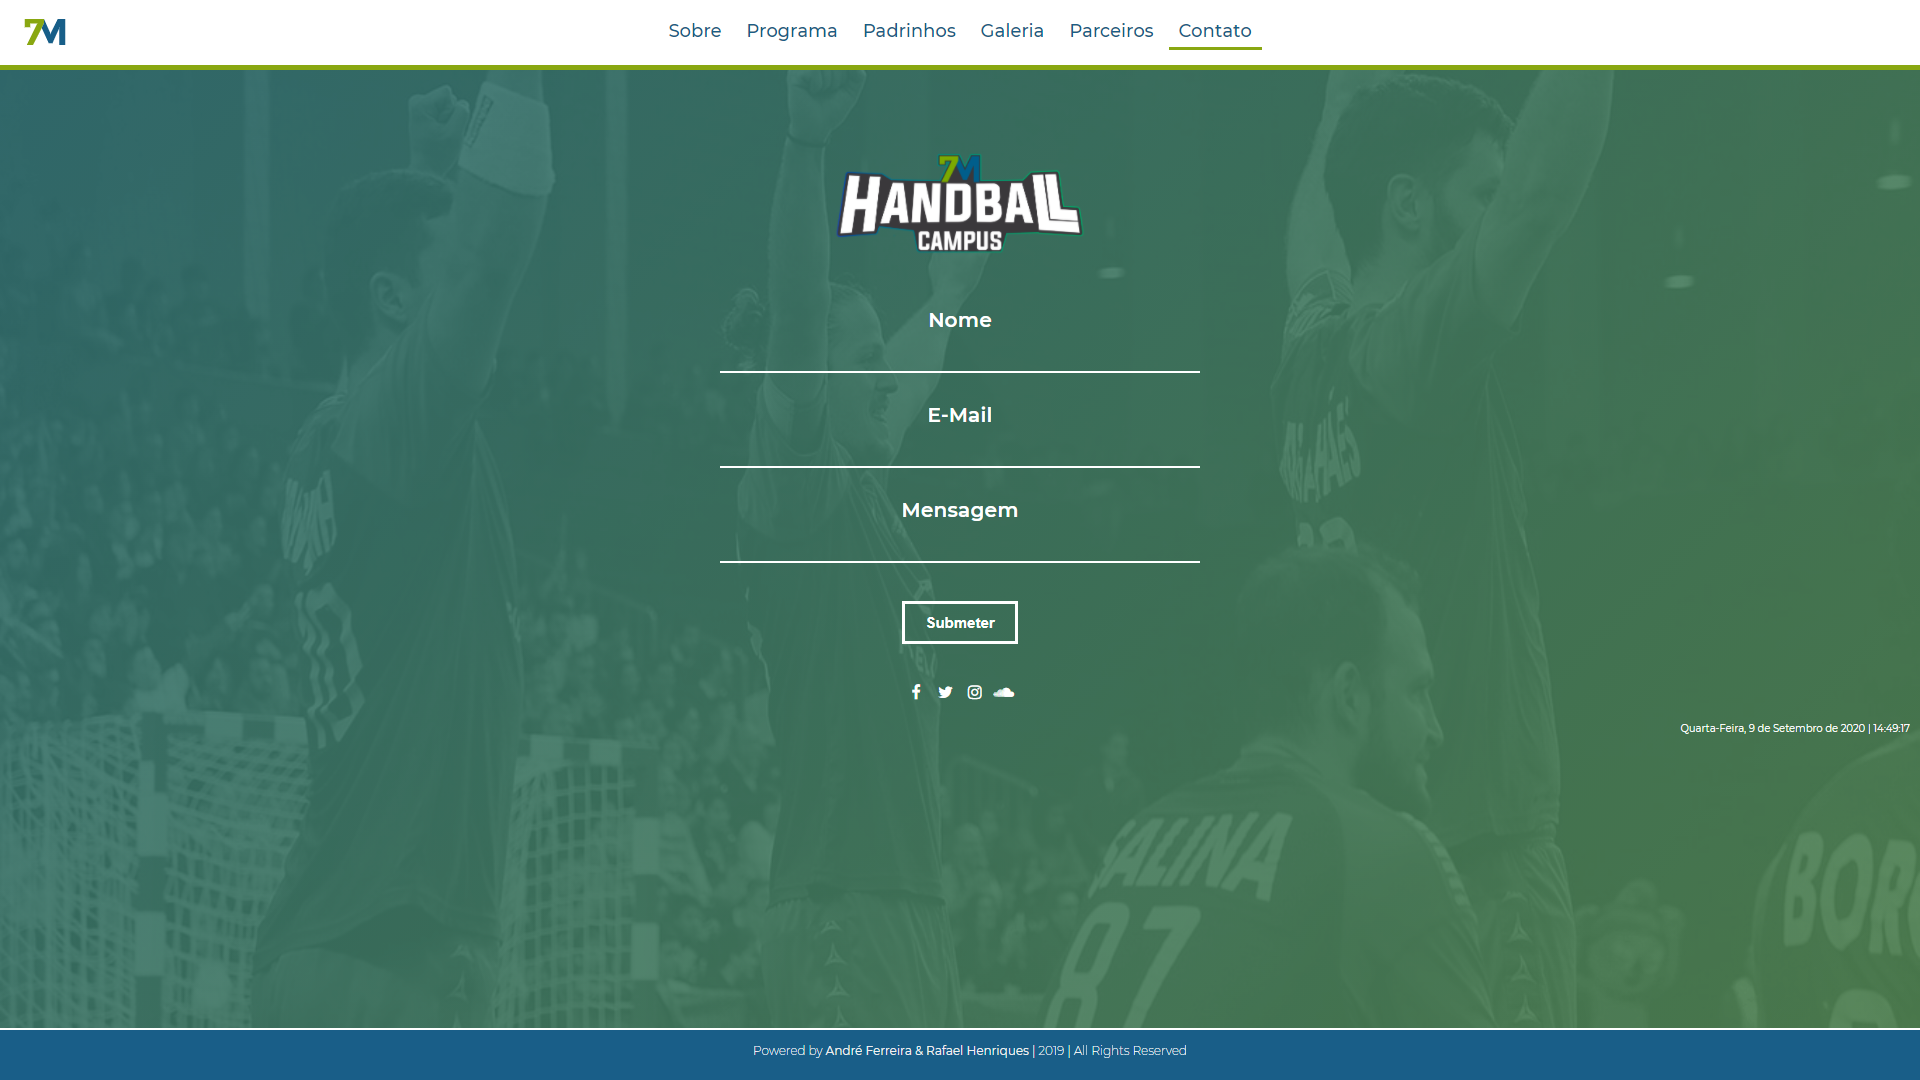 7M_Handball_Campus_6